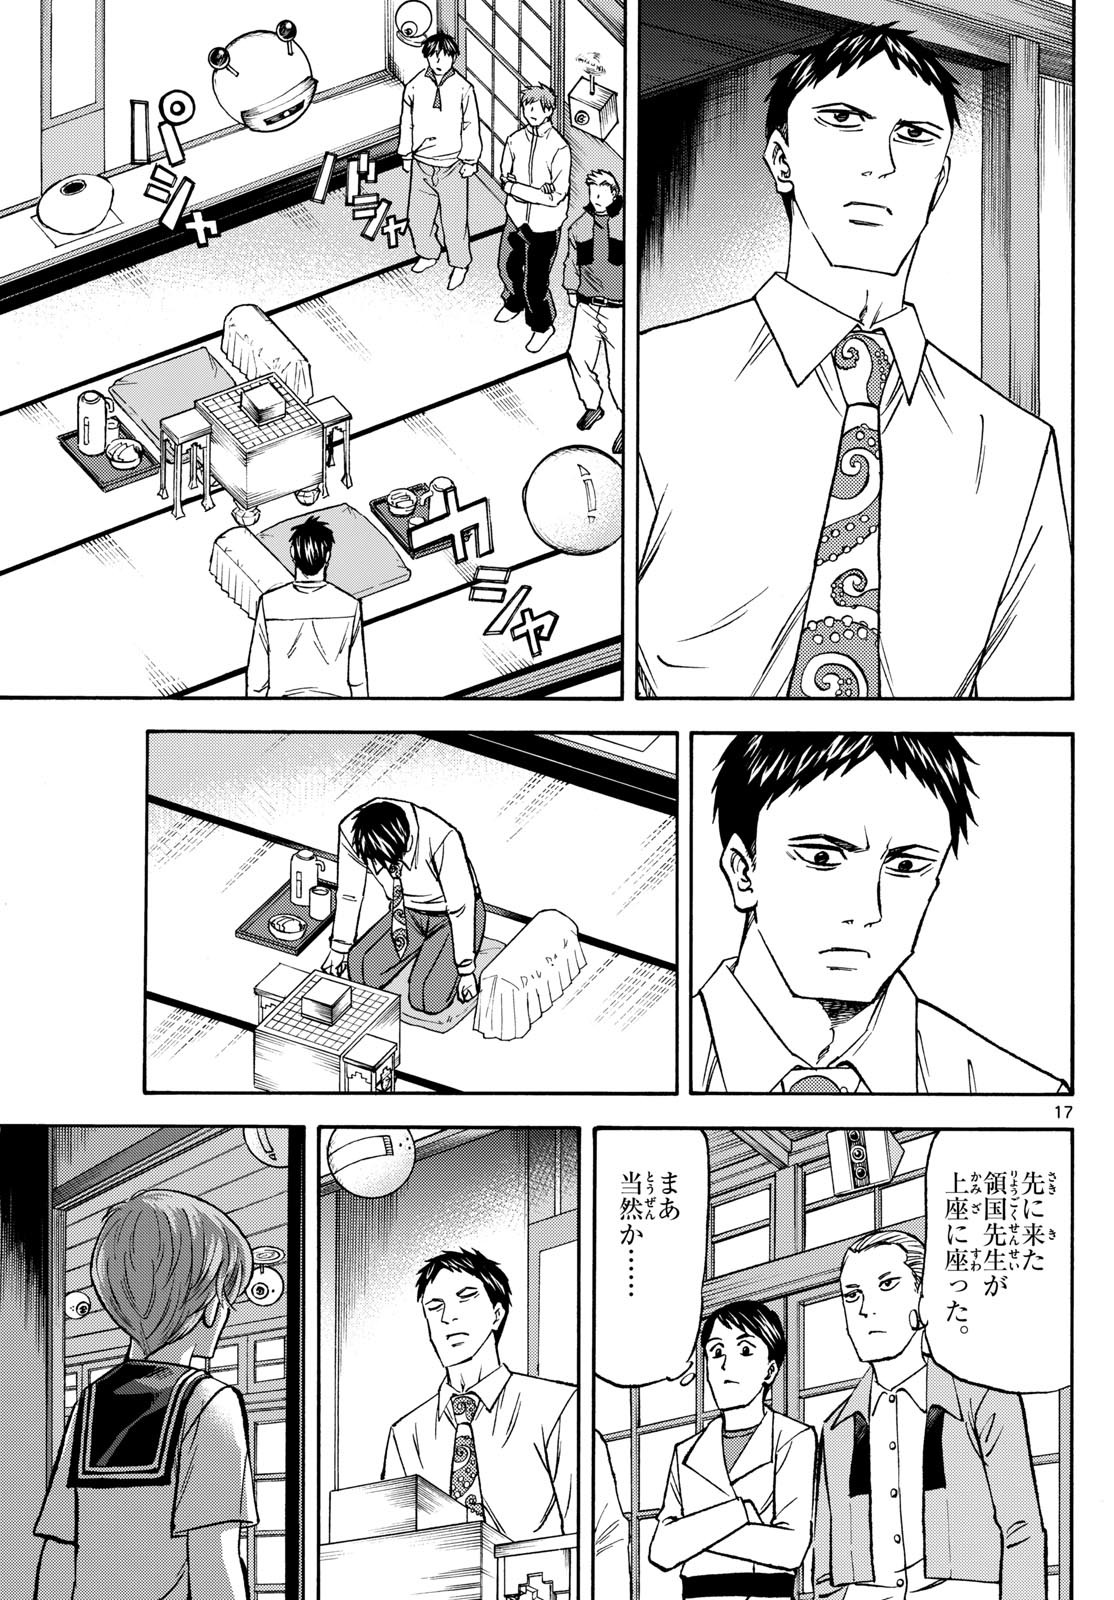 Ryu-to-Ichigo - Chapter 188 - Page 17